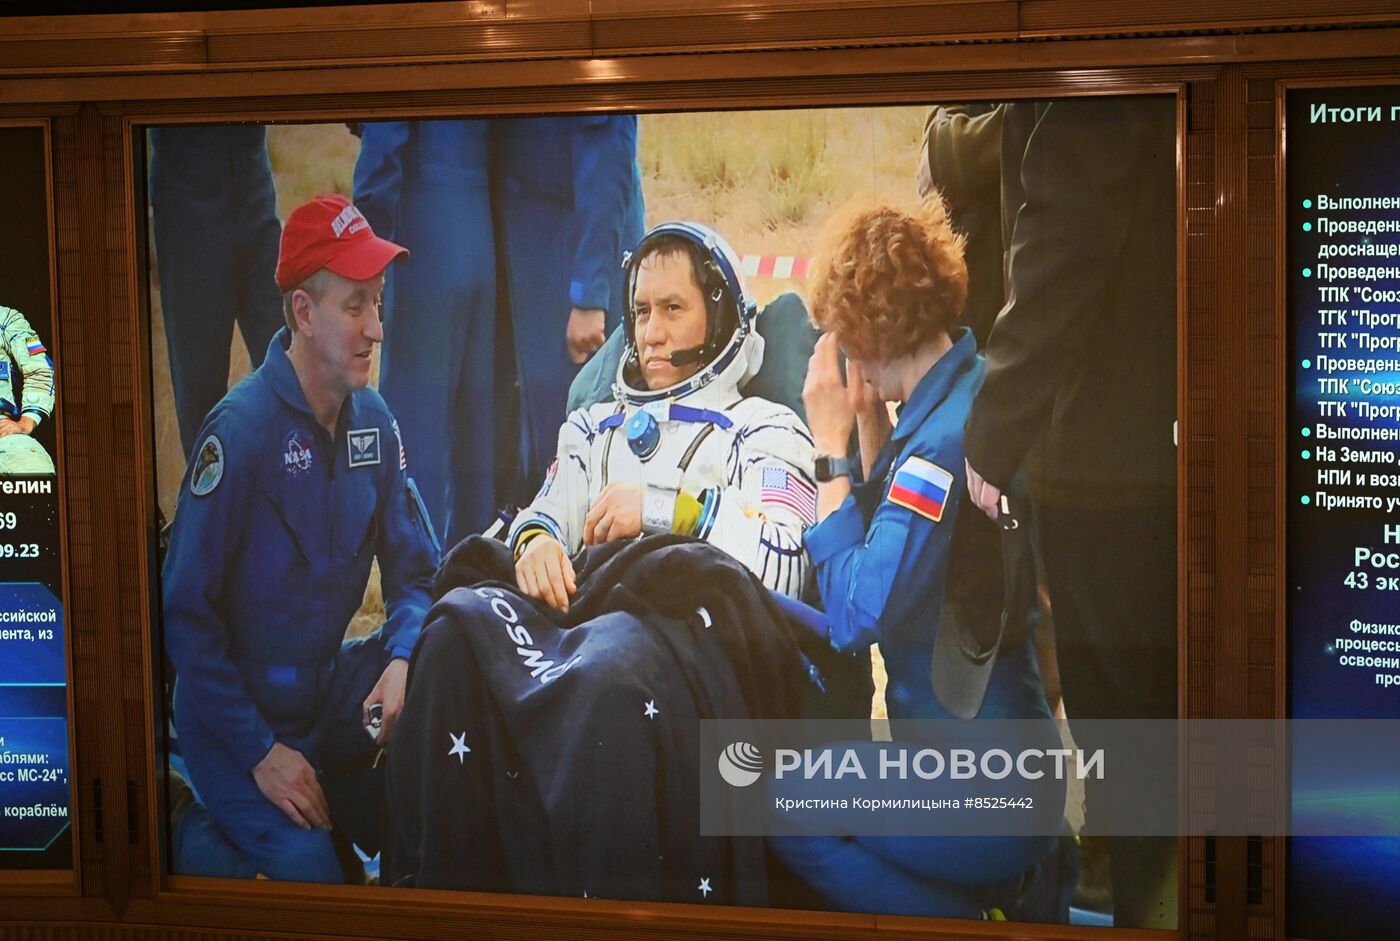 Экипаж годовой экспедиции вернулся с МКС на Землю на корабле "Союз МС-23"